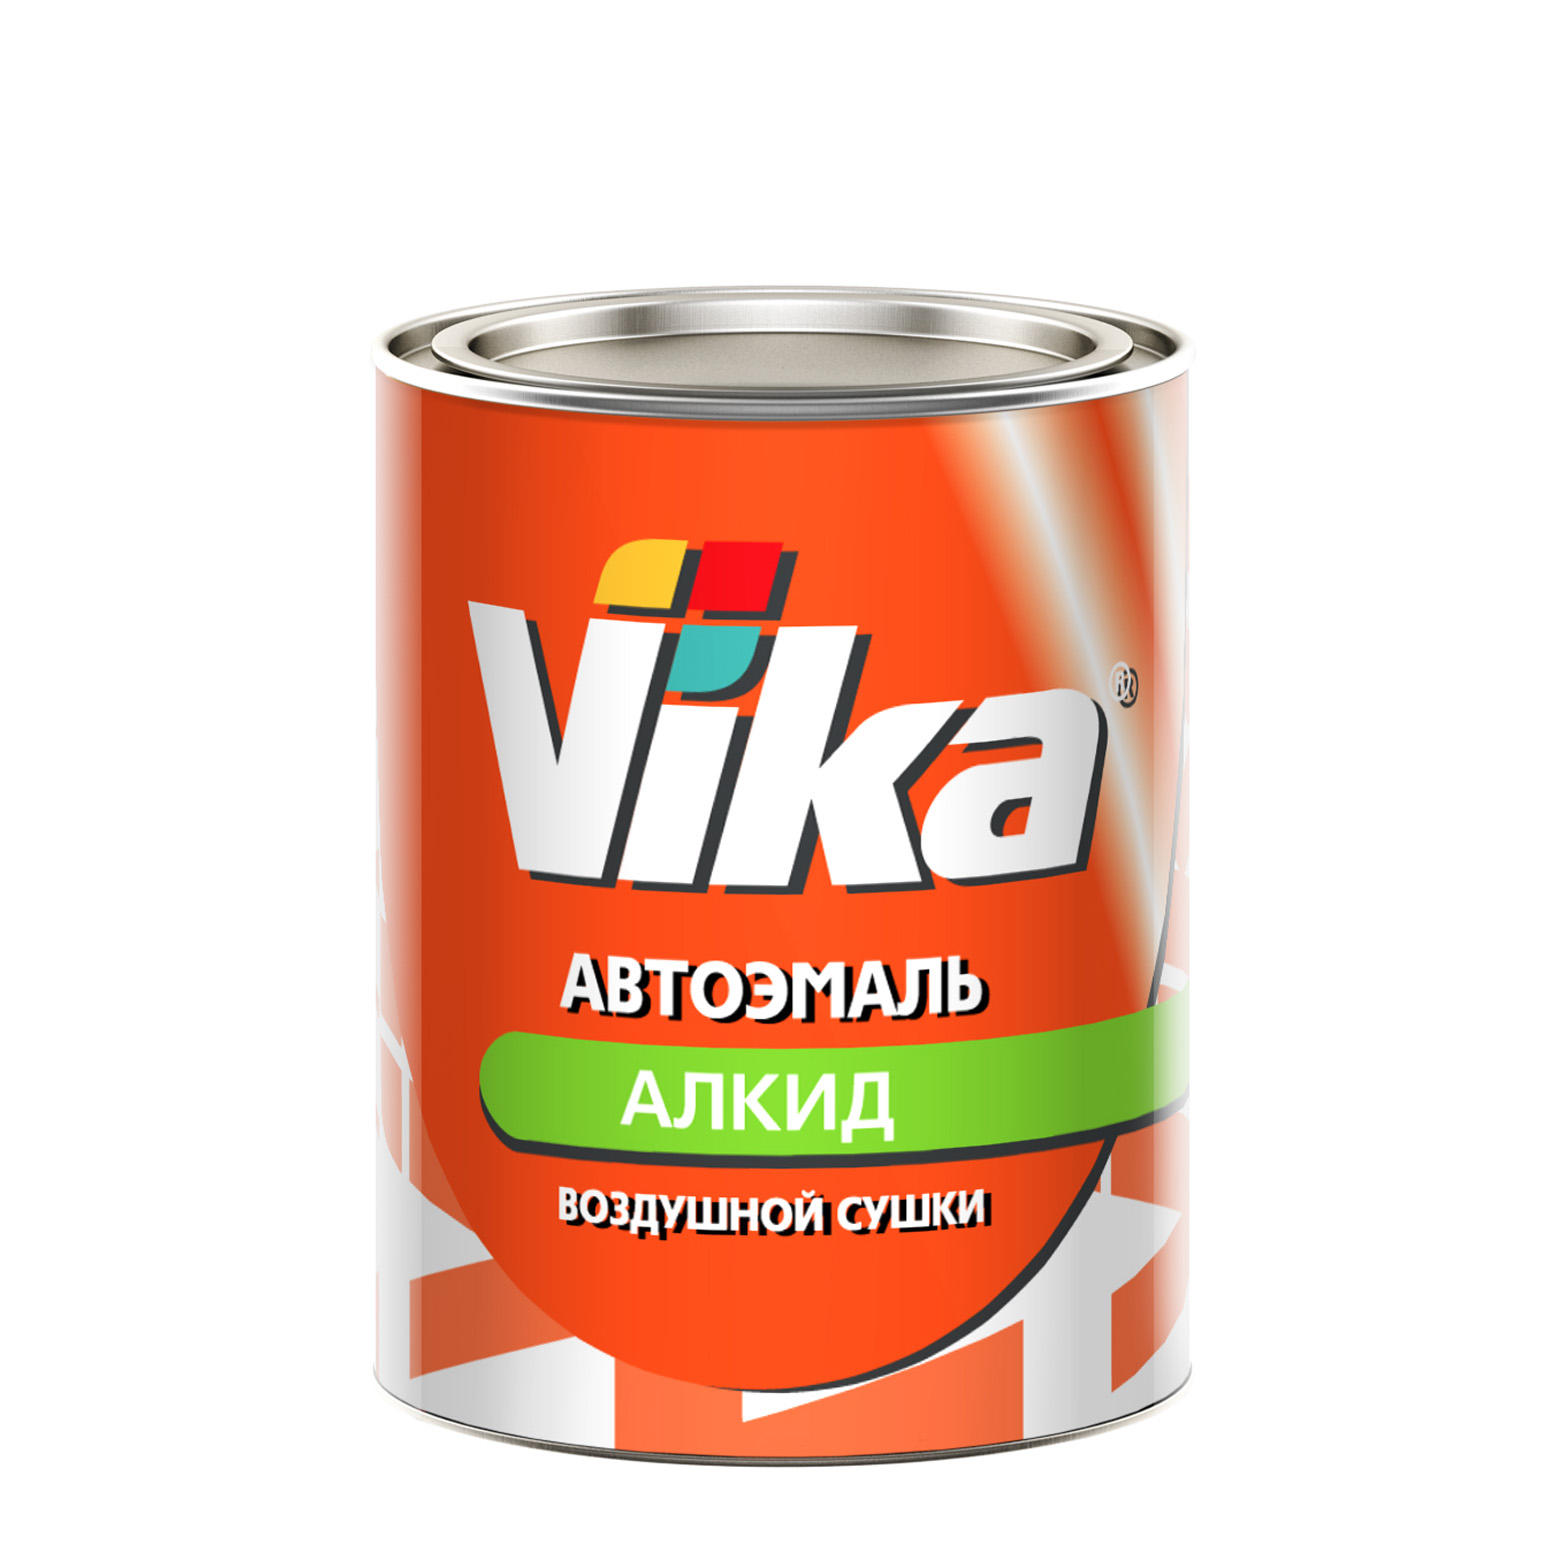 Фото 1 - Автоэмаль Vika-60, цвет 400 Босфор алкидная глянцевая естественной сушки - 0,8 кг.